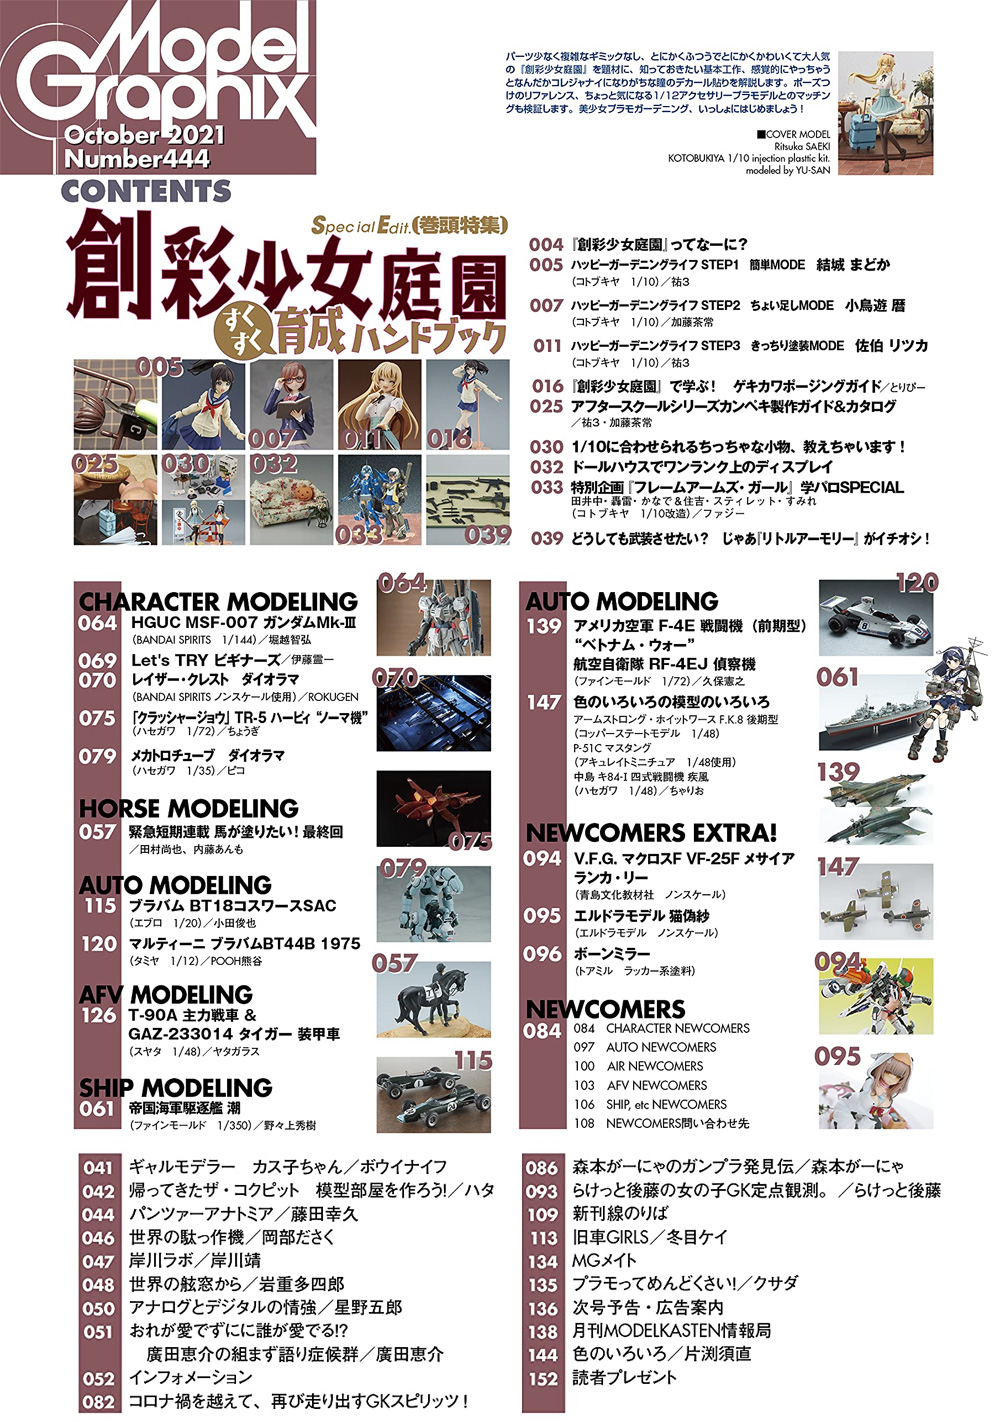 モデルグラフィックス 2021年10月号 雑誌 (大日本絵画 月刊 モデルグラフィックス No.443) 商品画像_1